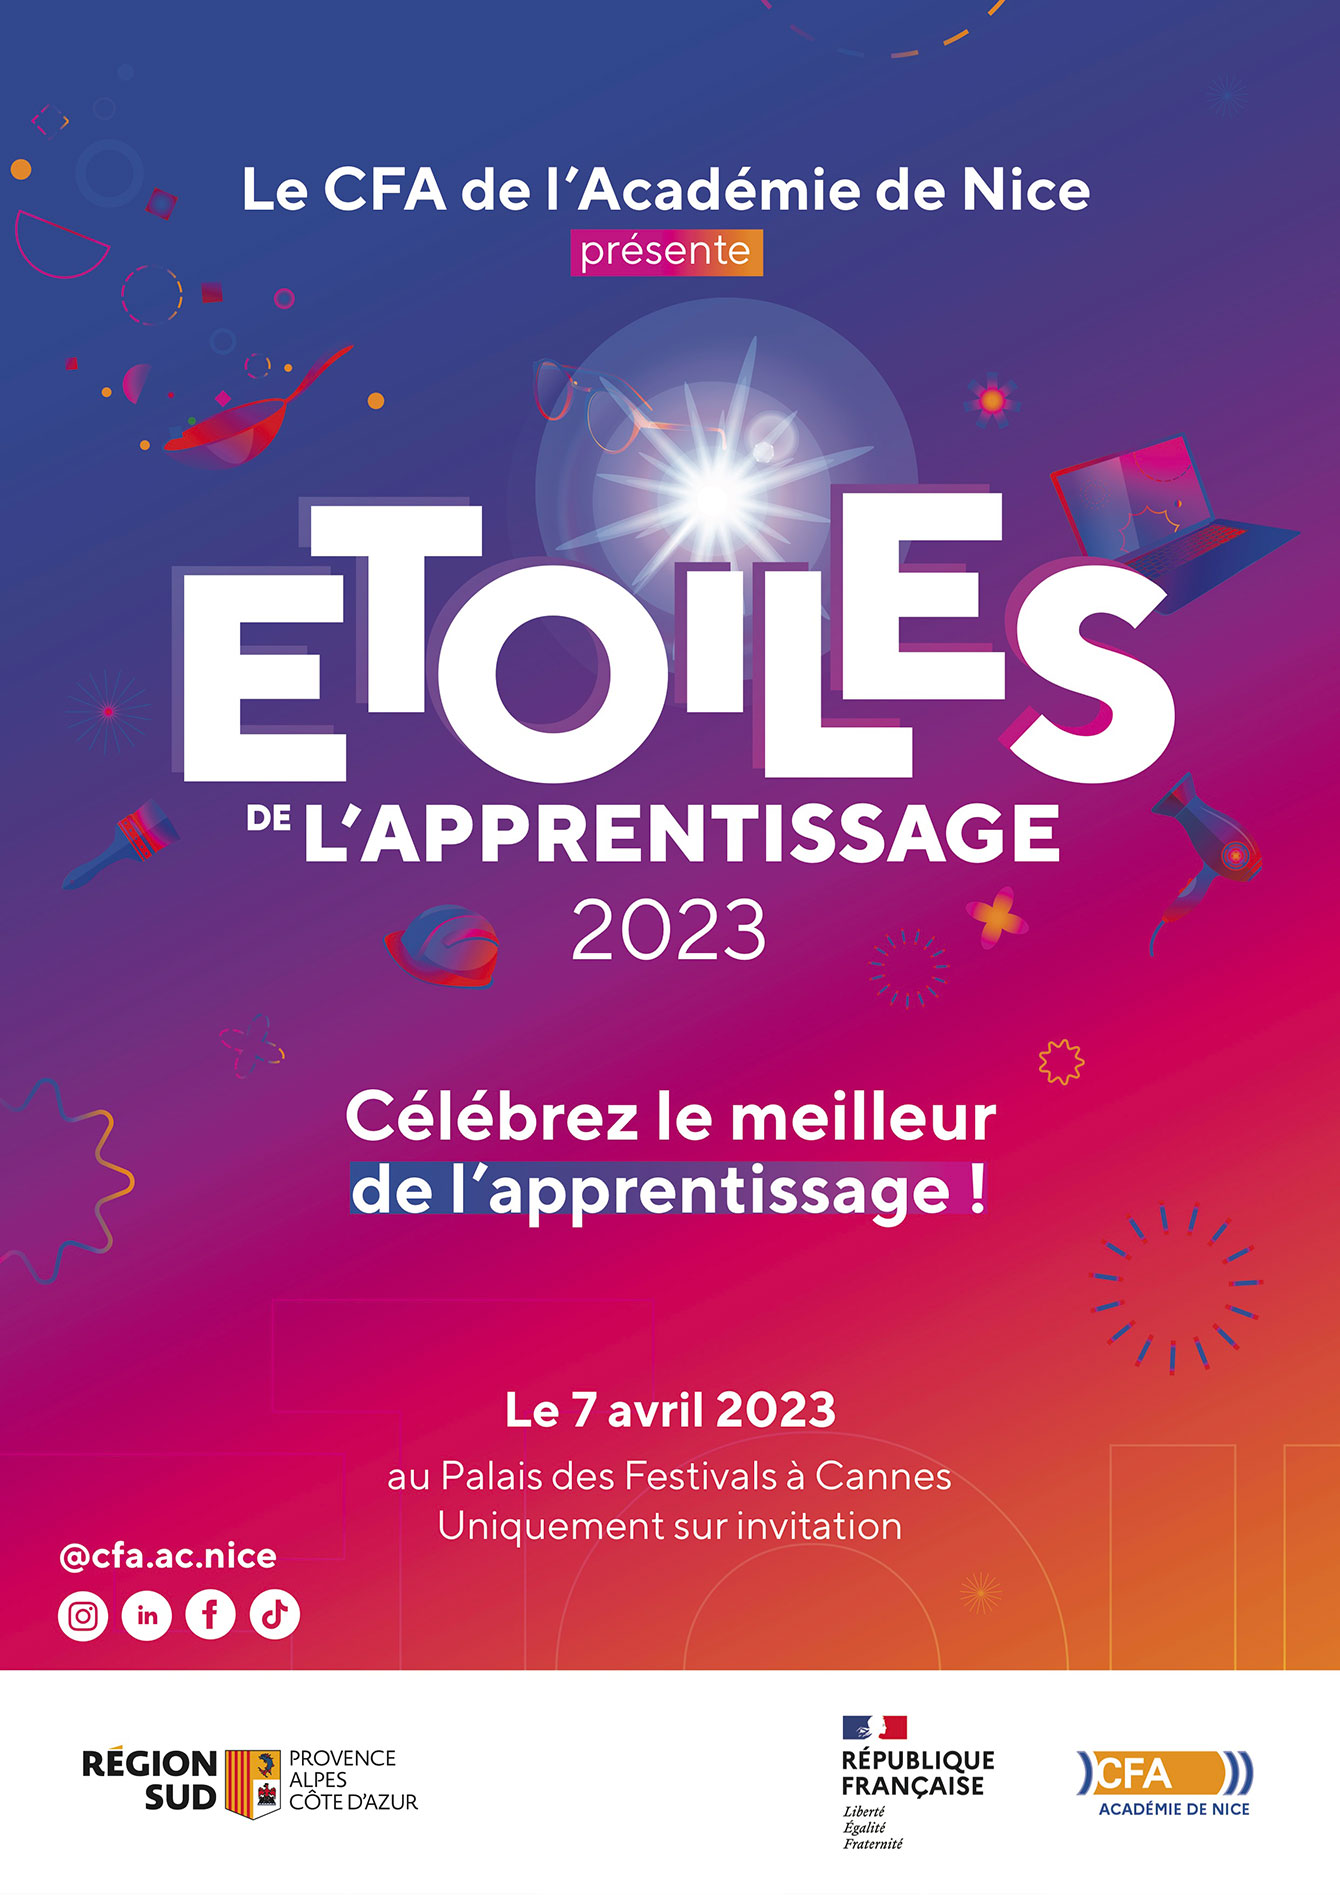 Le CFA de l’académie de Nice présente Etoiles de L’APPRENTISSAGE 2023 - Célébrez le meilleur de l’apprentissage ! Le 7 avril 2023 au Palais des Festivals à Cannes Uniquement sur invitation @cfa.ac.nice